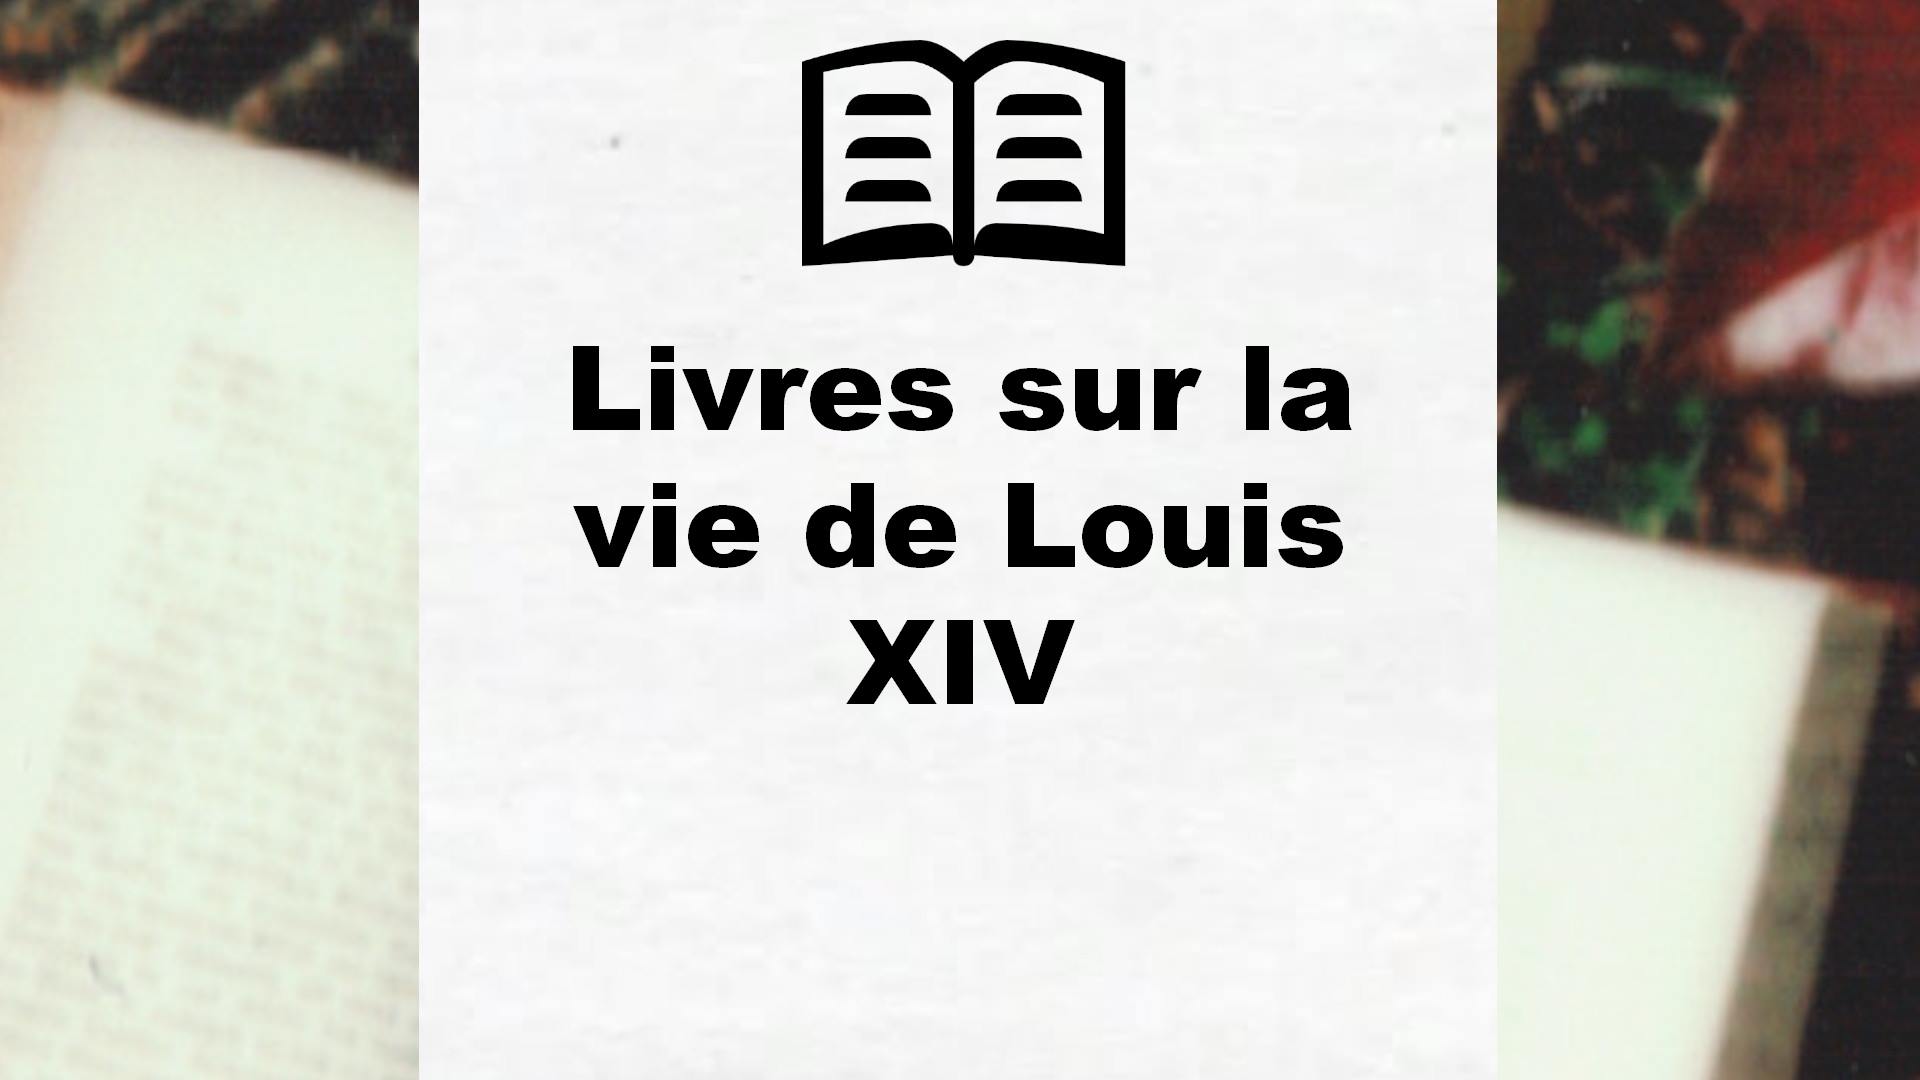 Livres sur la vie de Louis XIV